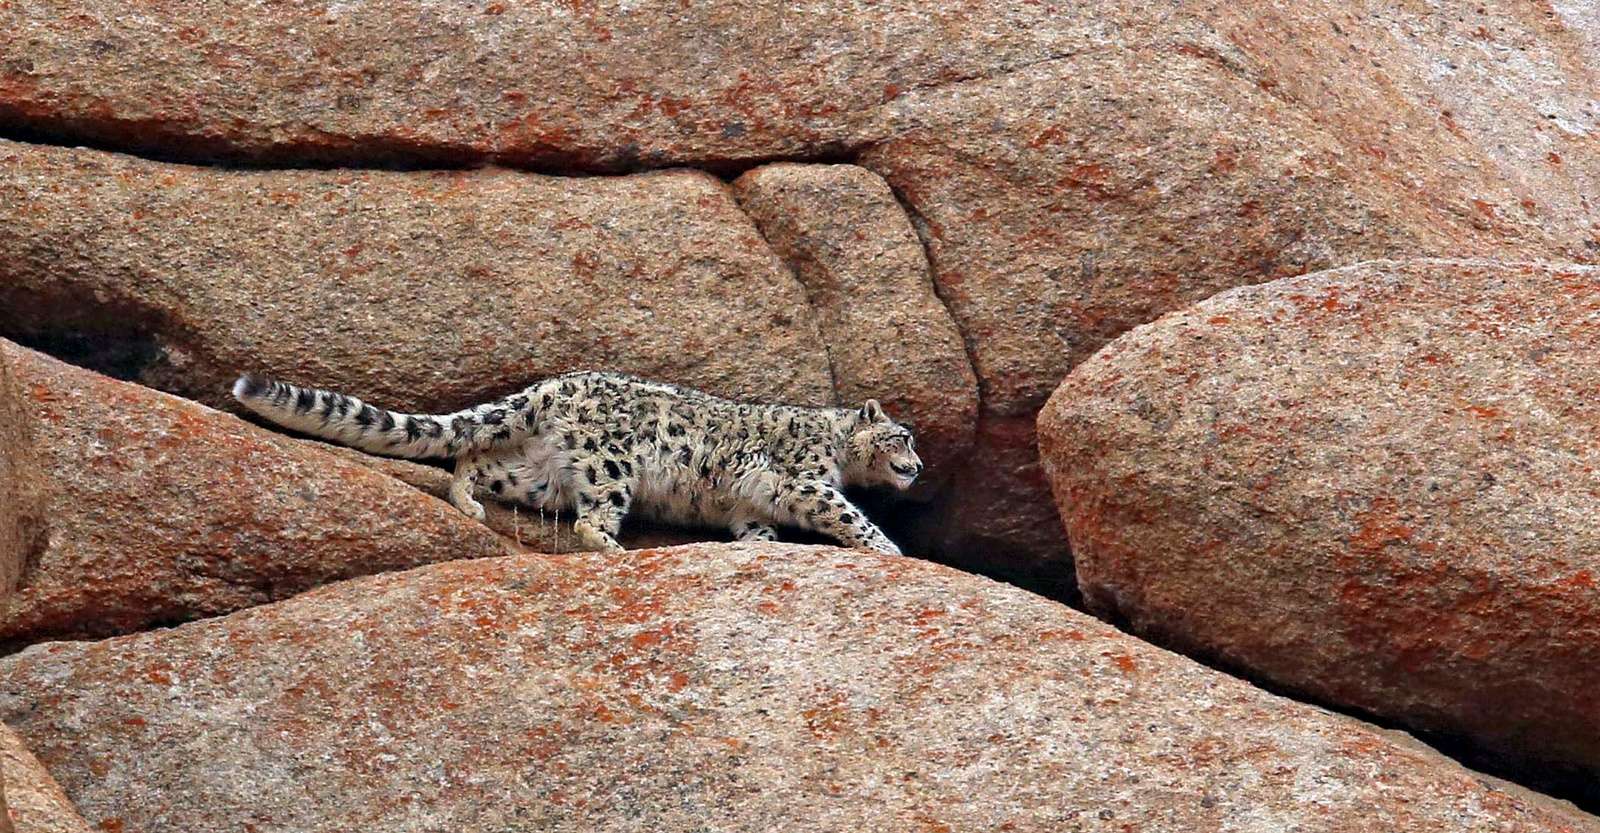 Snow leopard, Ladakh, India.